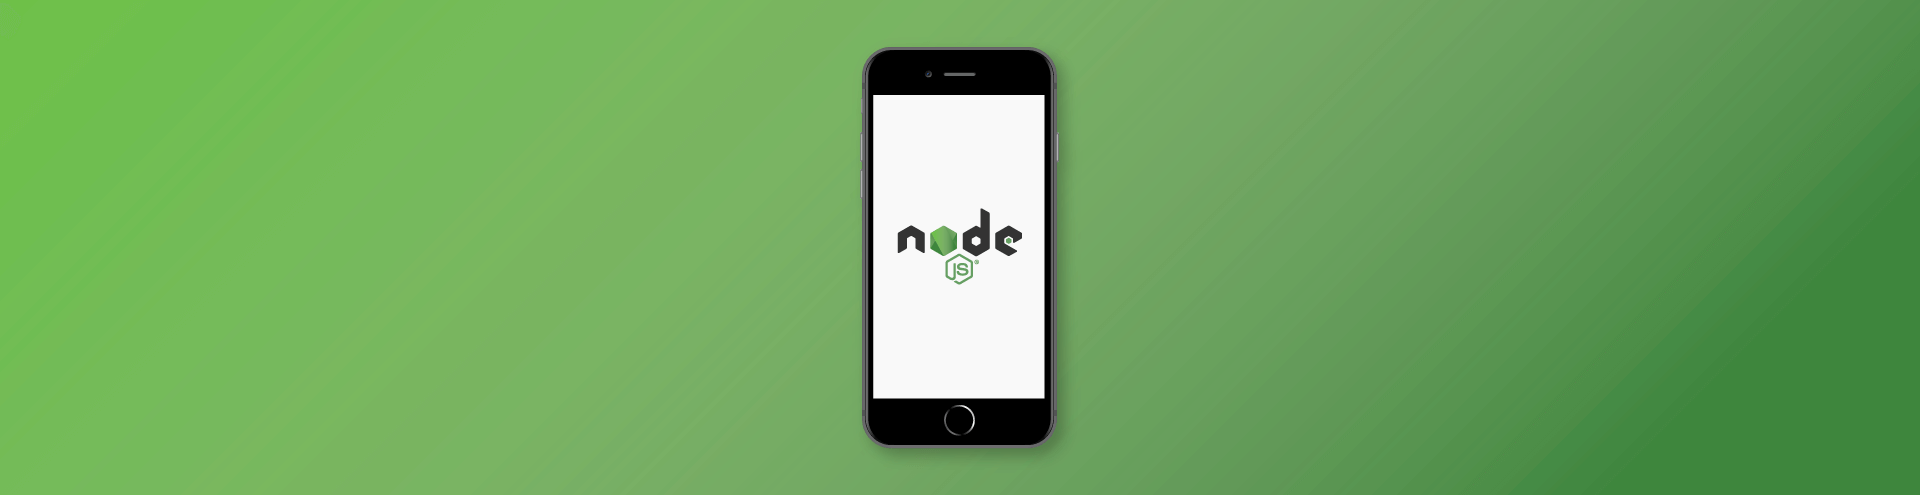 Building a Stable Node.js Project Architecture. Best Practices for Node.js Development